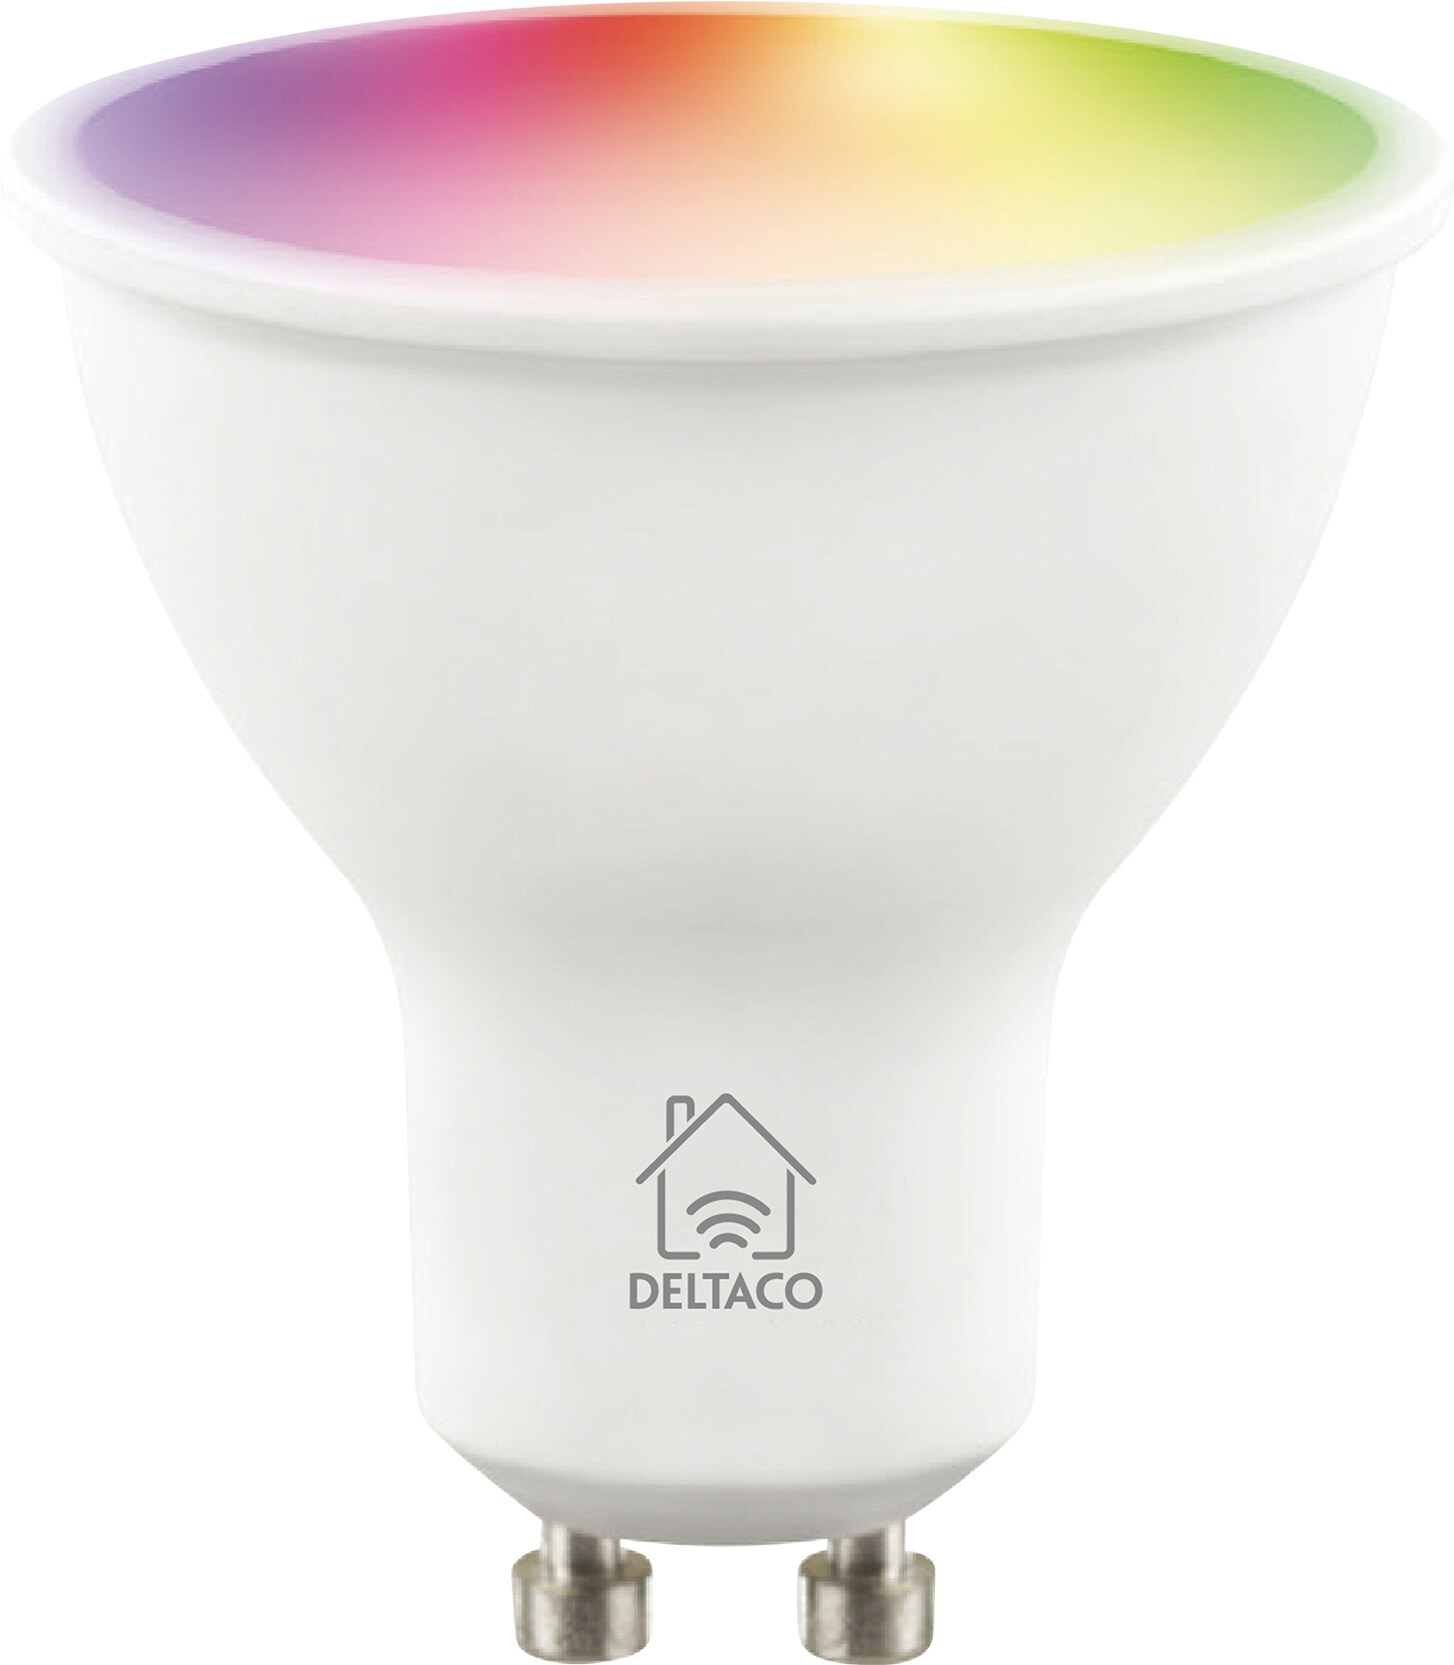 Deltaco Smart Home LED-pære 4350010 | Elgiganten